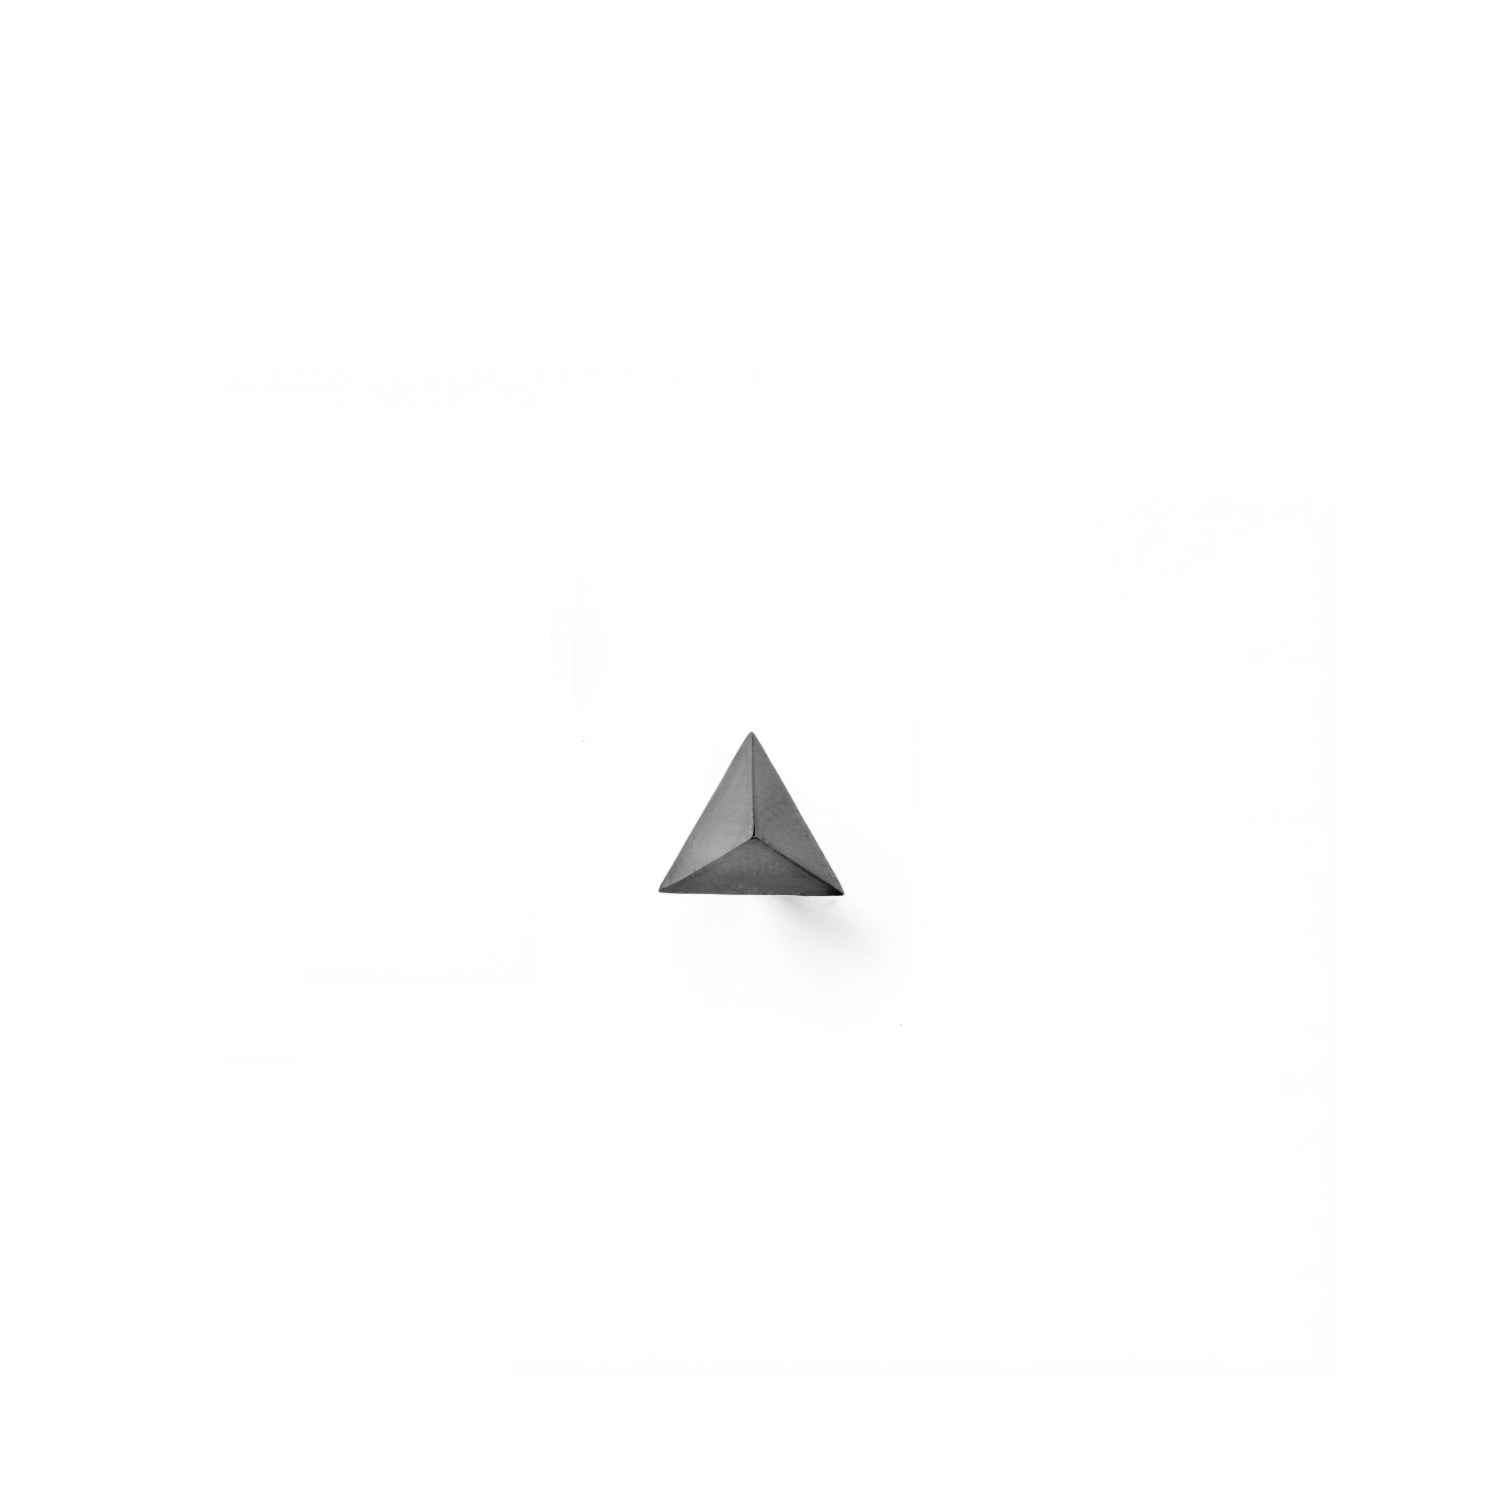 Single Tetrahedron Stud Earring - Black